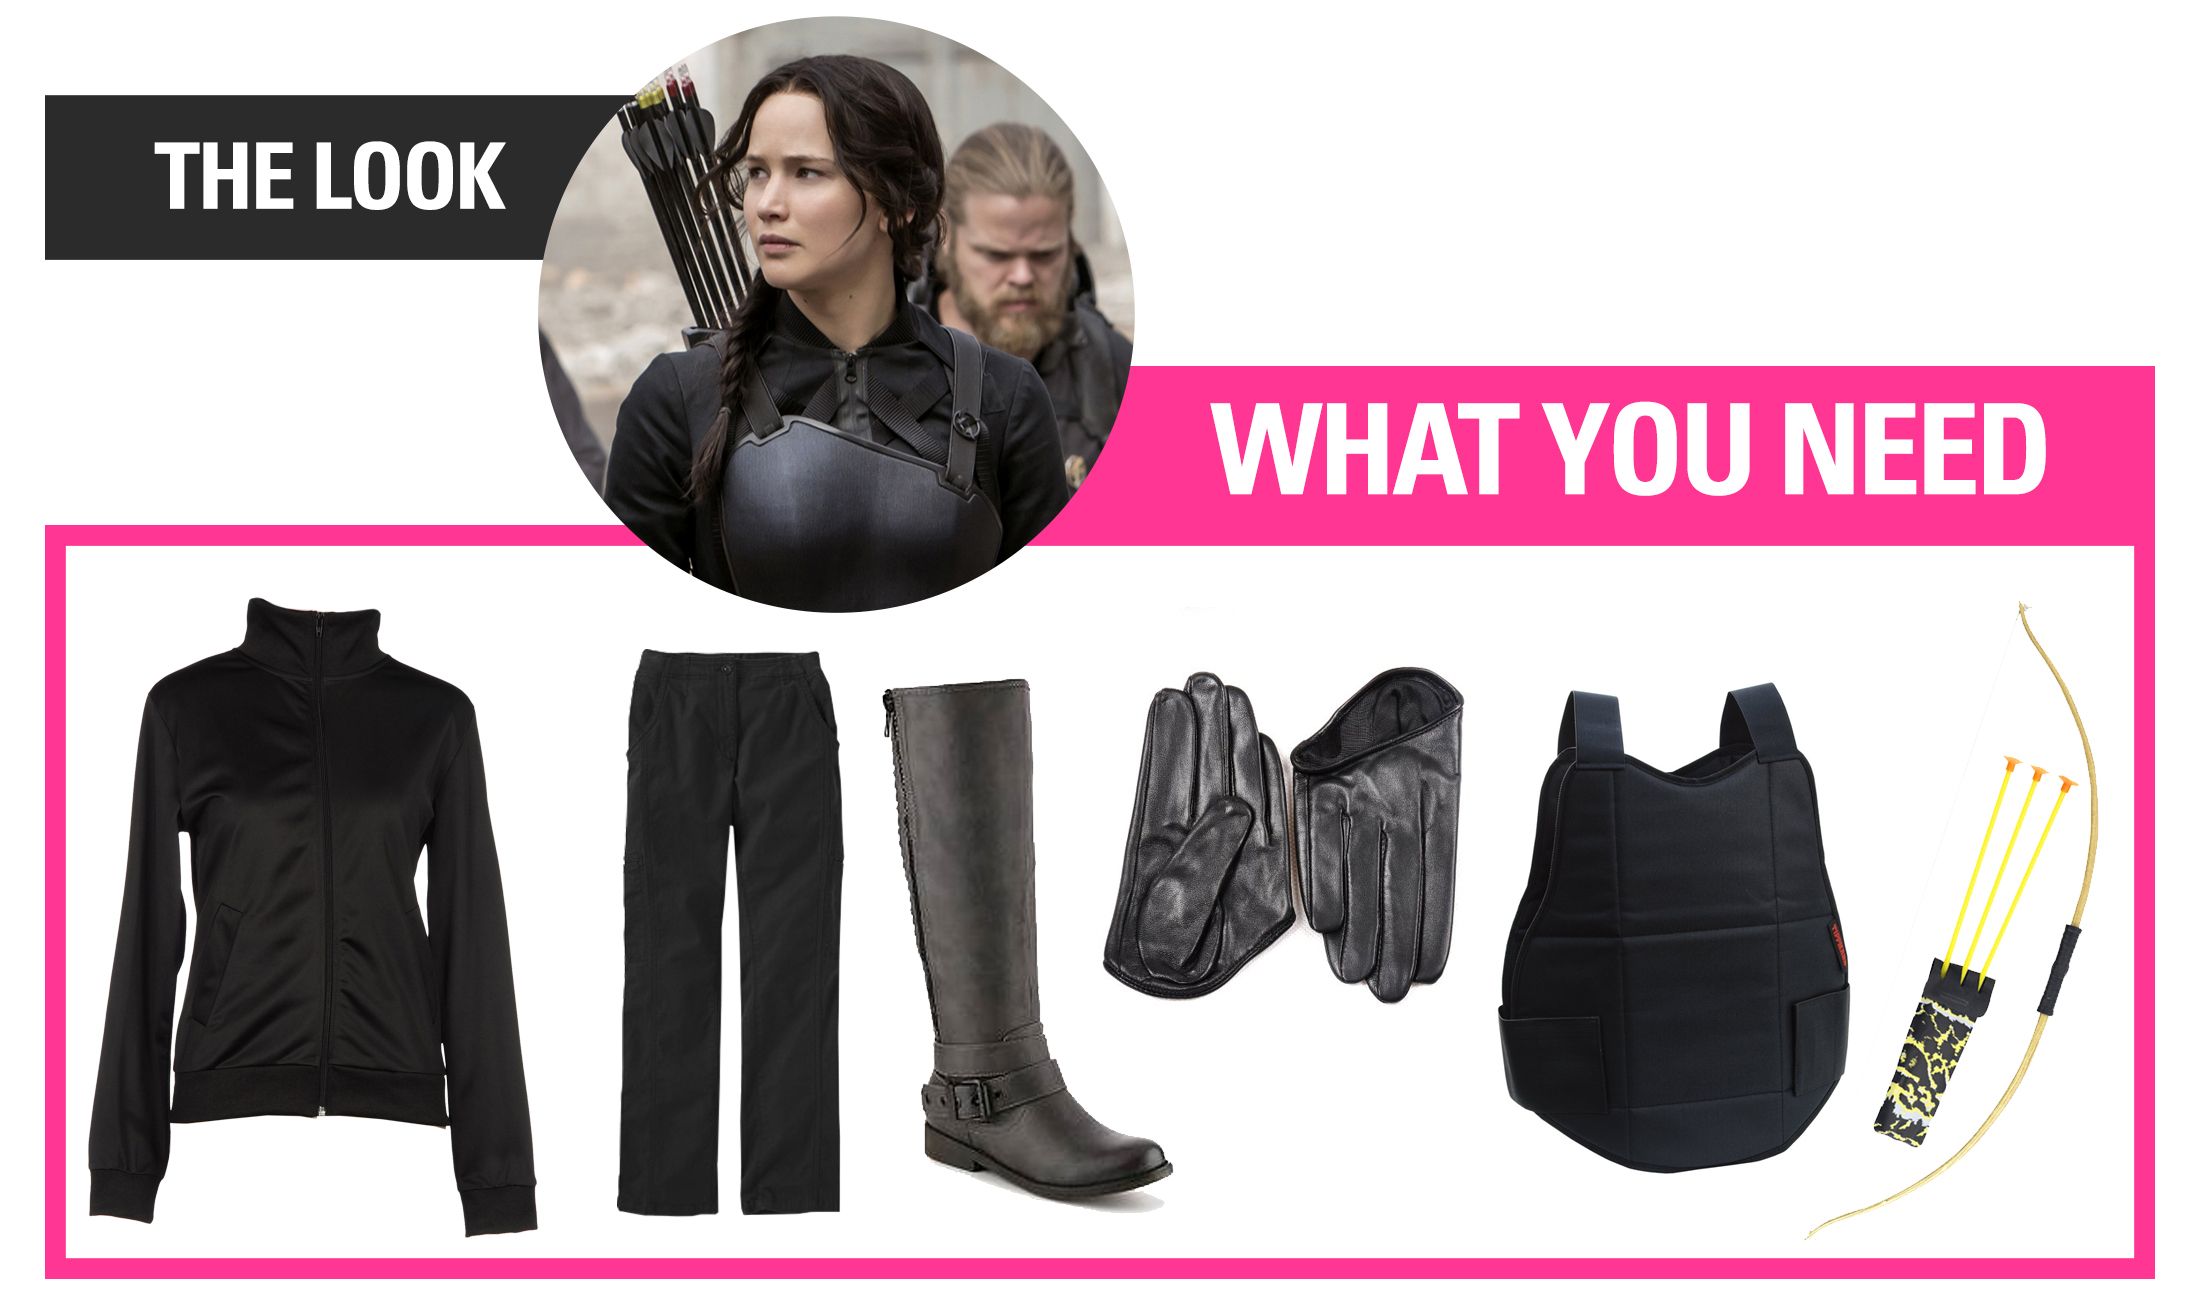 5 DIY Katniss Everdeen Costumes - Cheap Hunger Games Halloween Costume Ideas